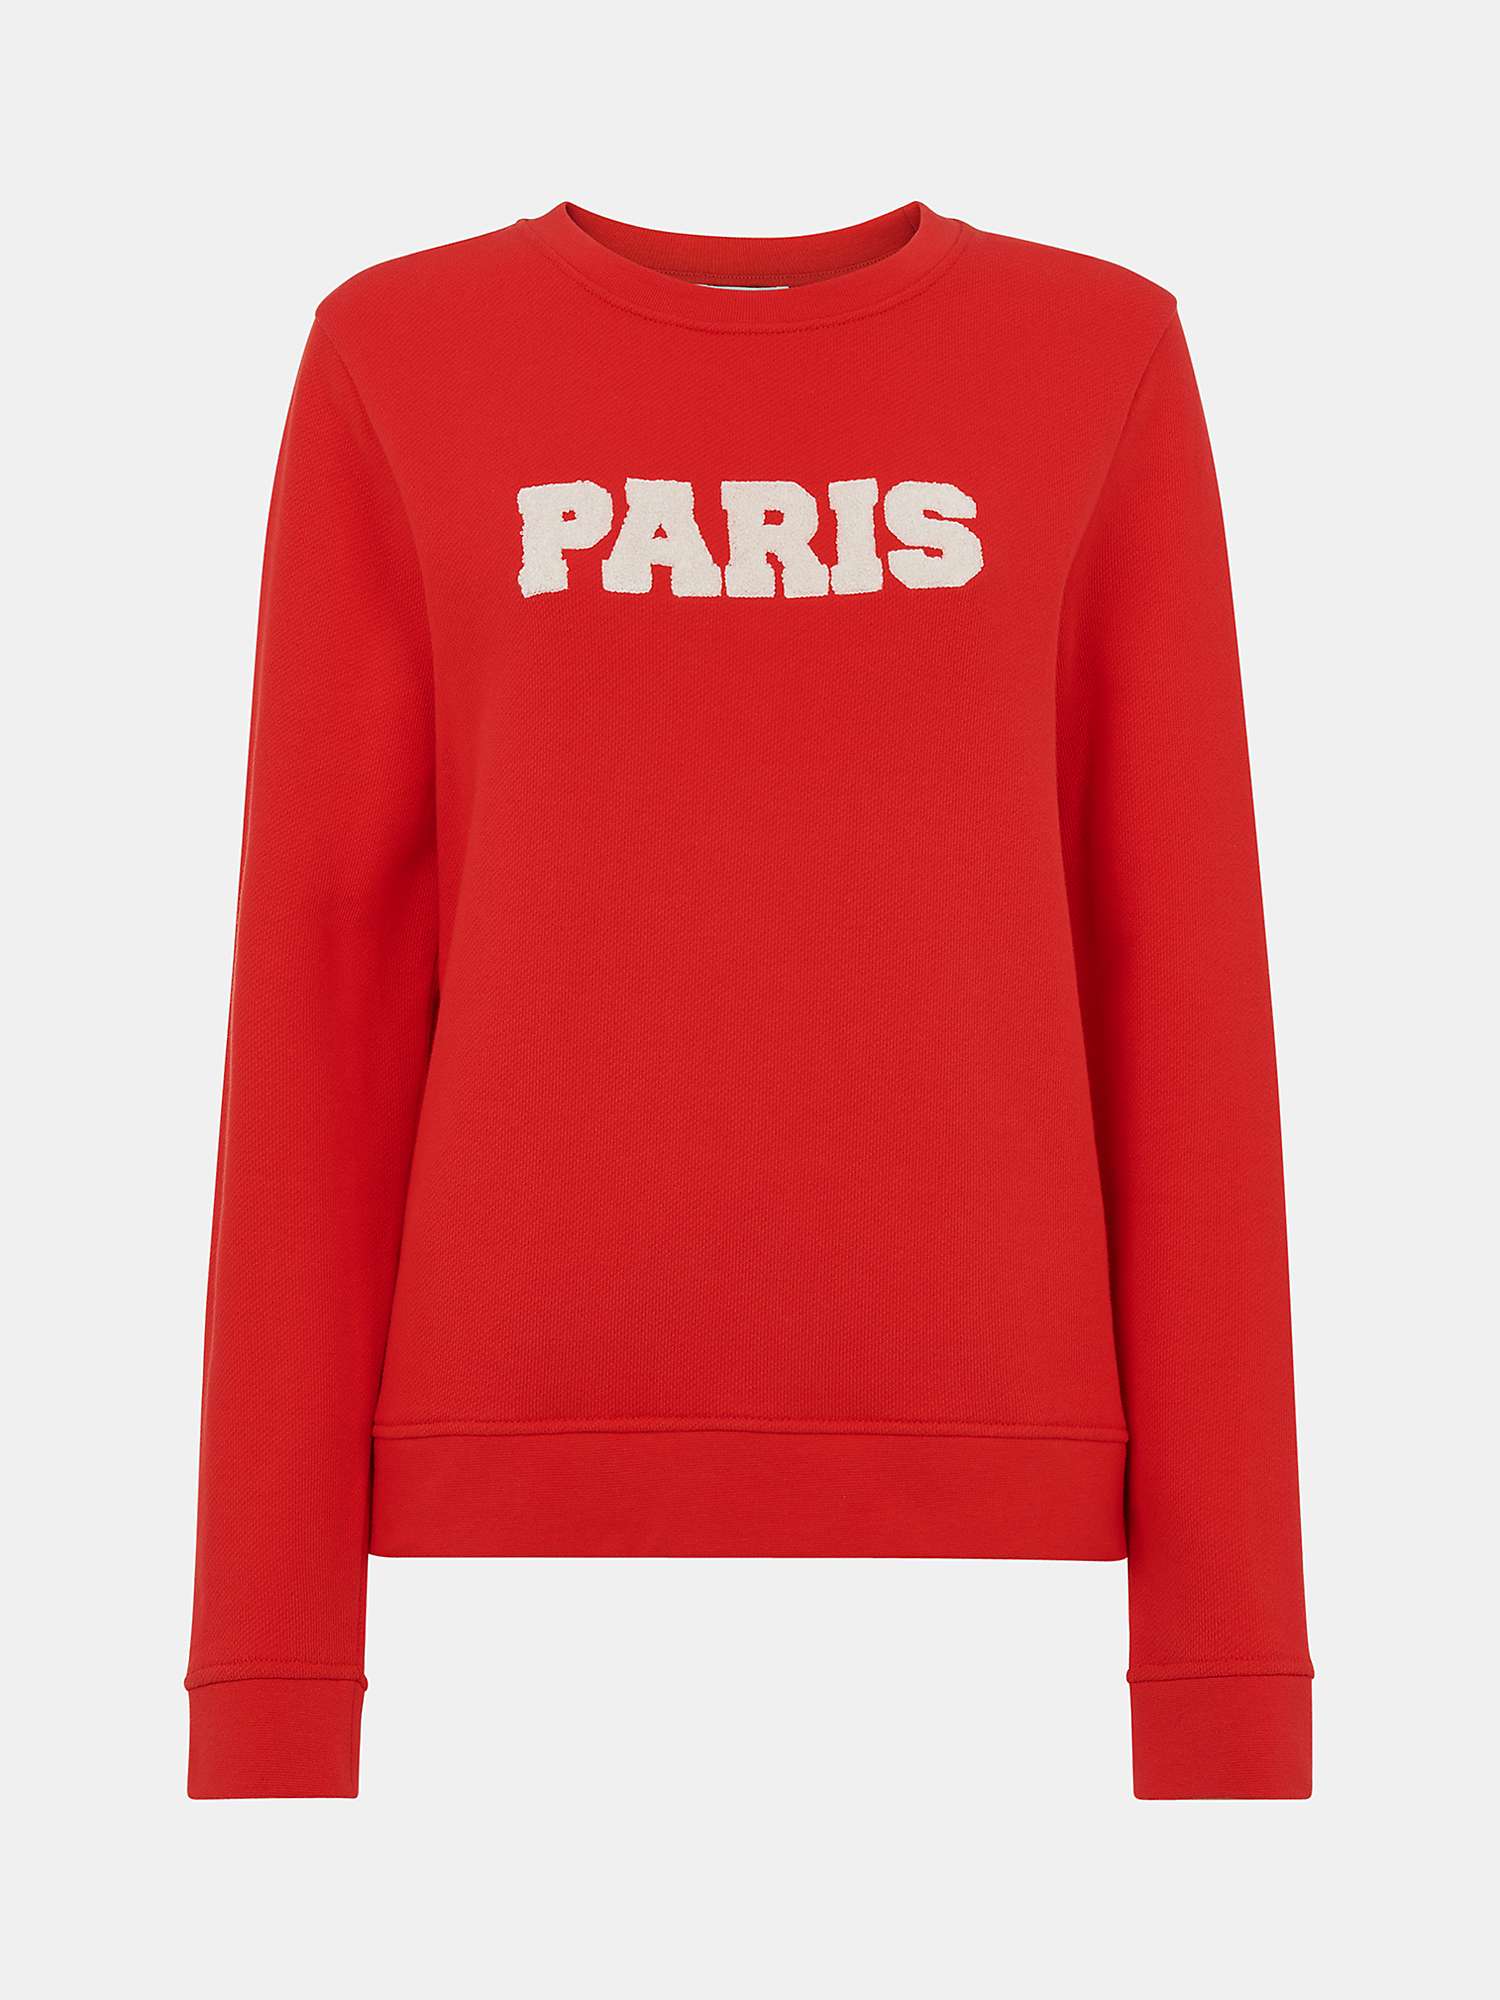 Buy Whistles Paris Logo Sweatshirt, Red Online at johnlewis.com